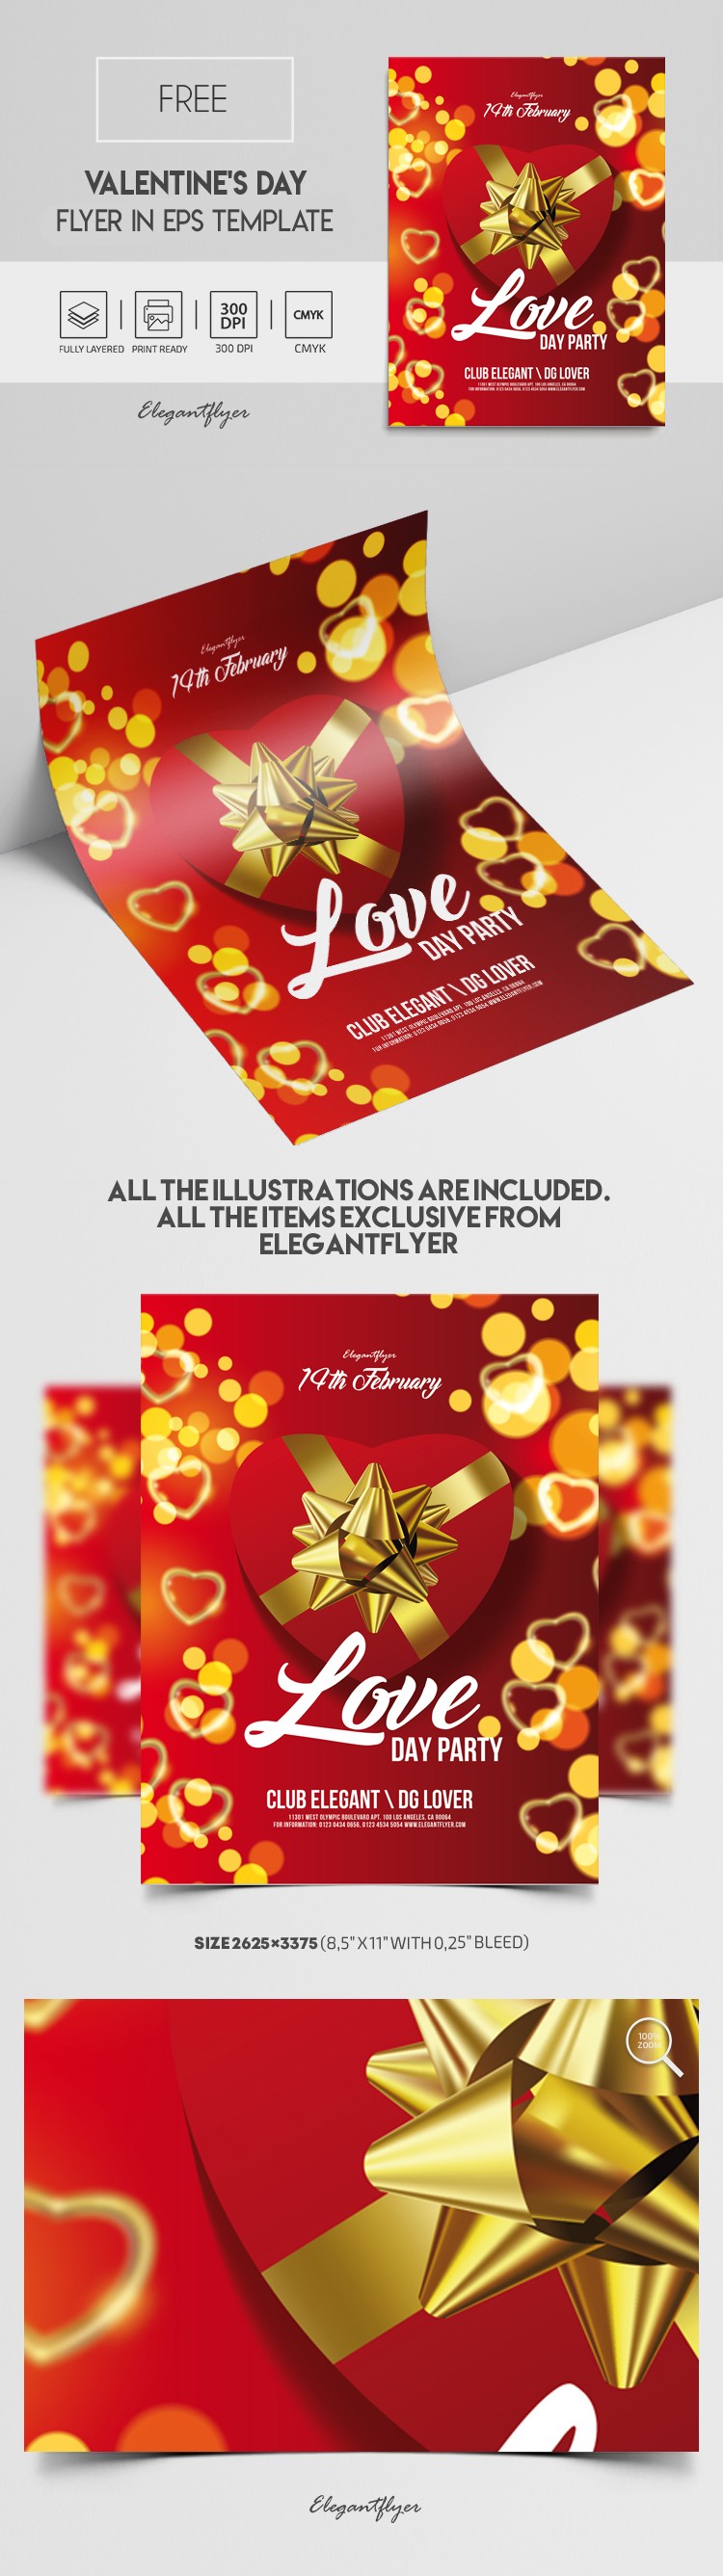 Valentine's Day Flyer by ElegantFlyer